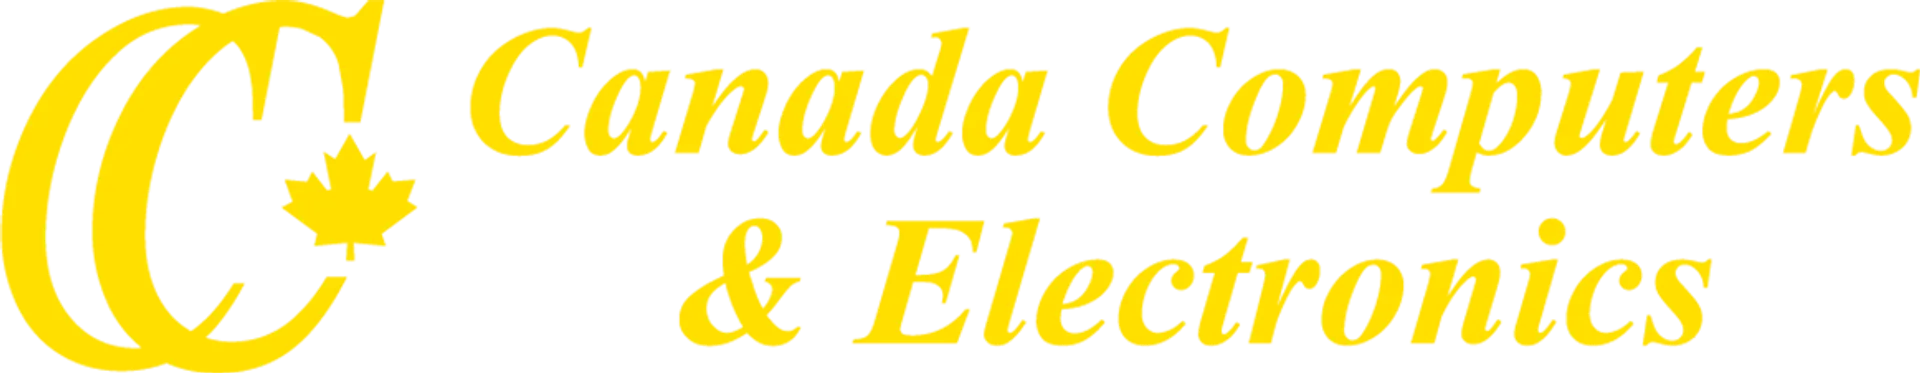 CANADA COMPUTERS logo de circulaires